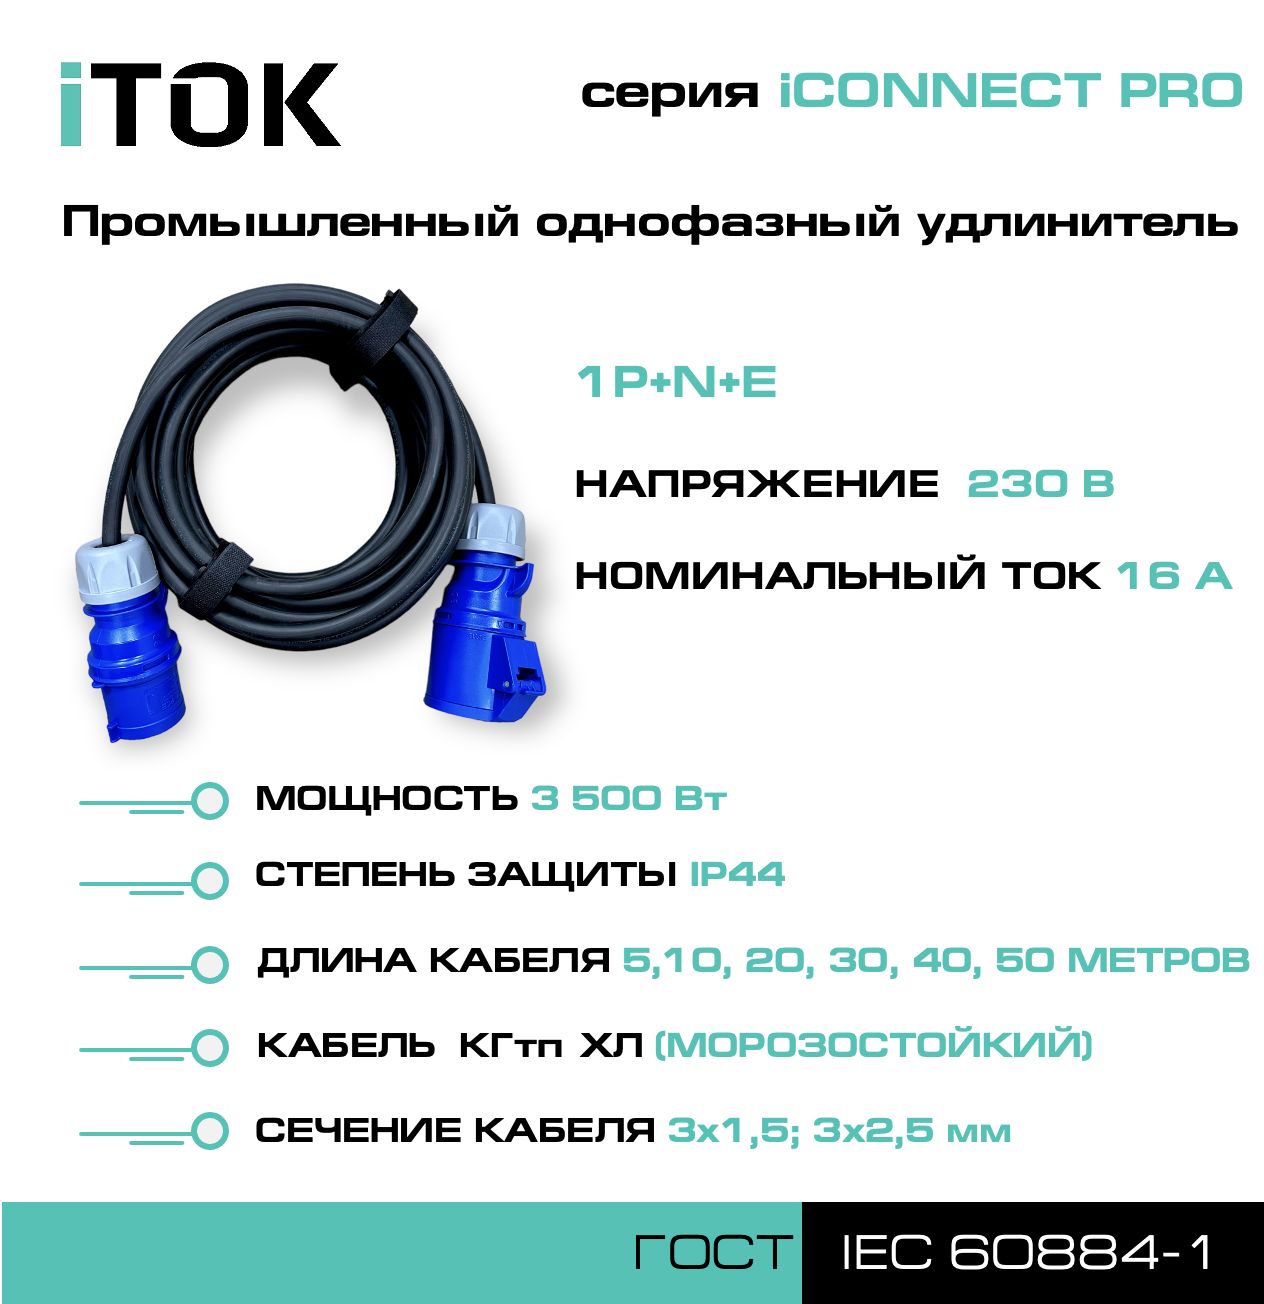 Удлинитель силовой iTOK iCONNECT PRO 230В 16А 40м КГтп-ХЛ 3х2,5 мм 1P+N+E, IP44